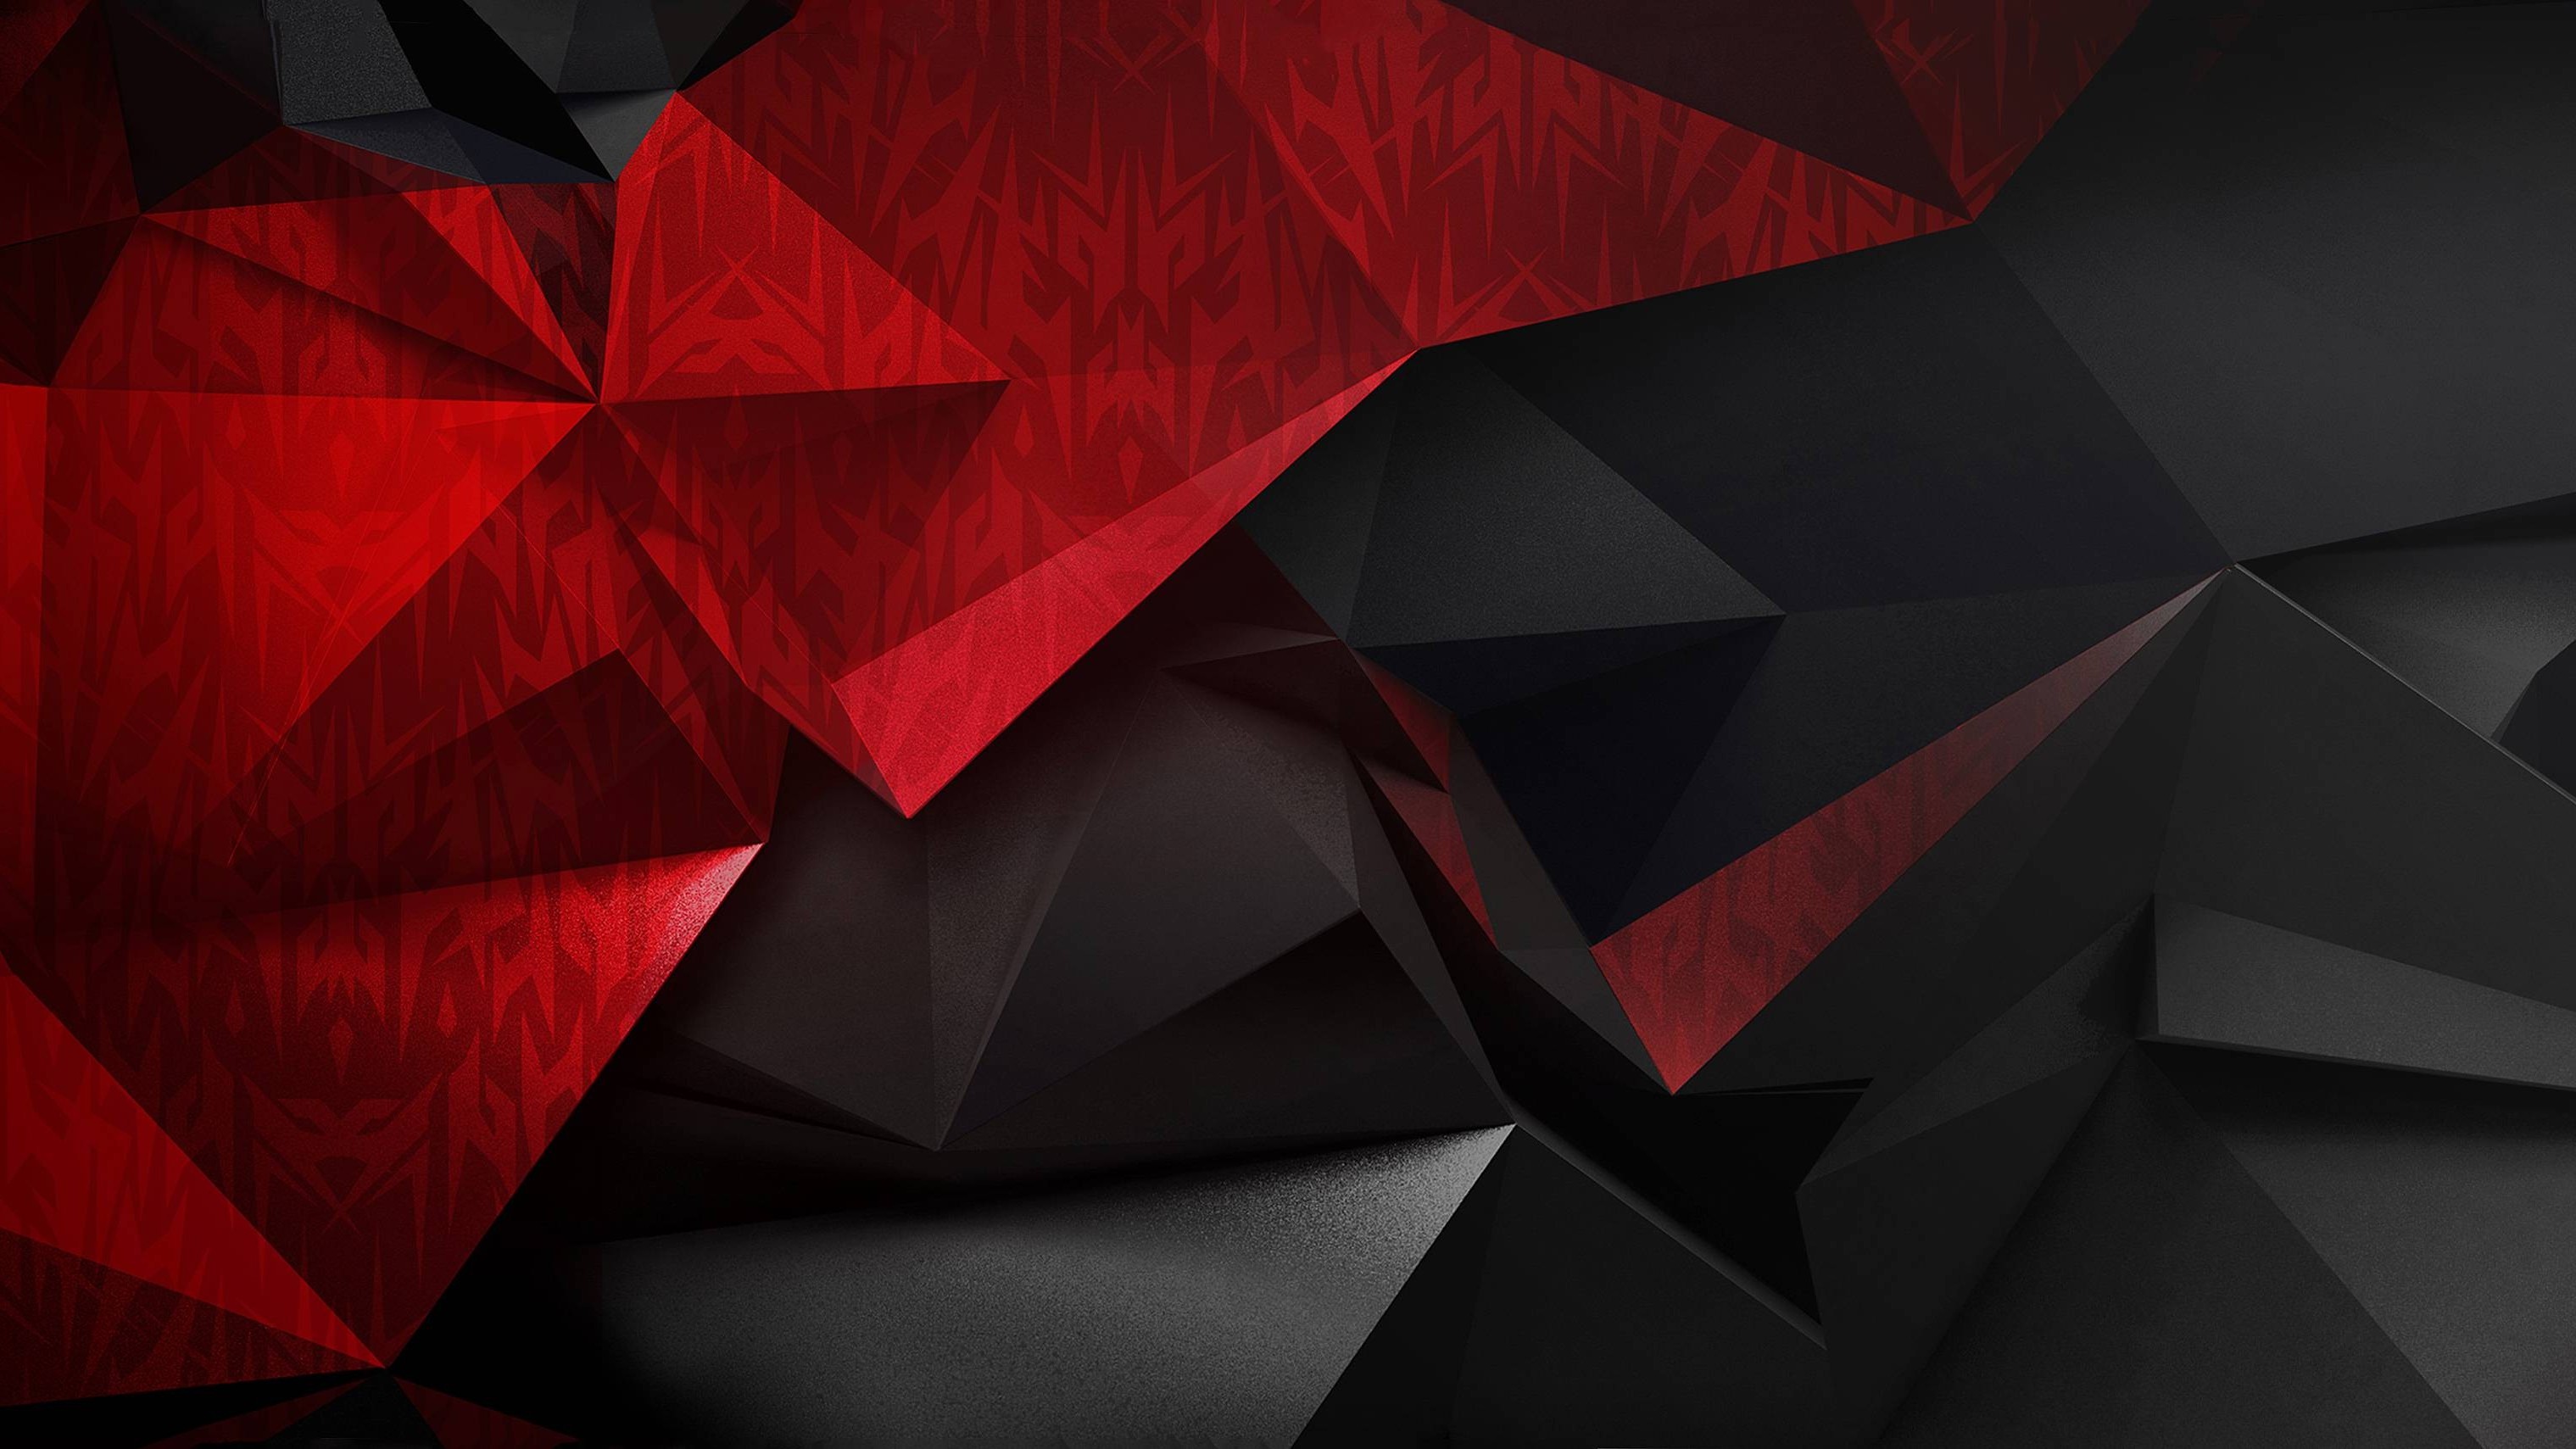 acer predator wallpaper,rot,dreieck,origami,design,die architektur